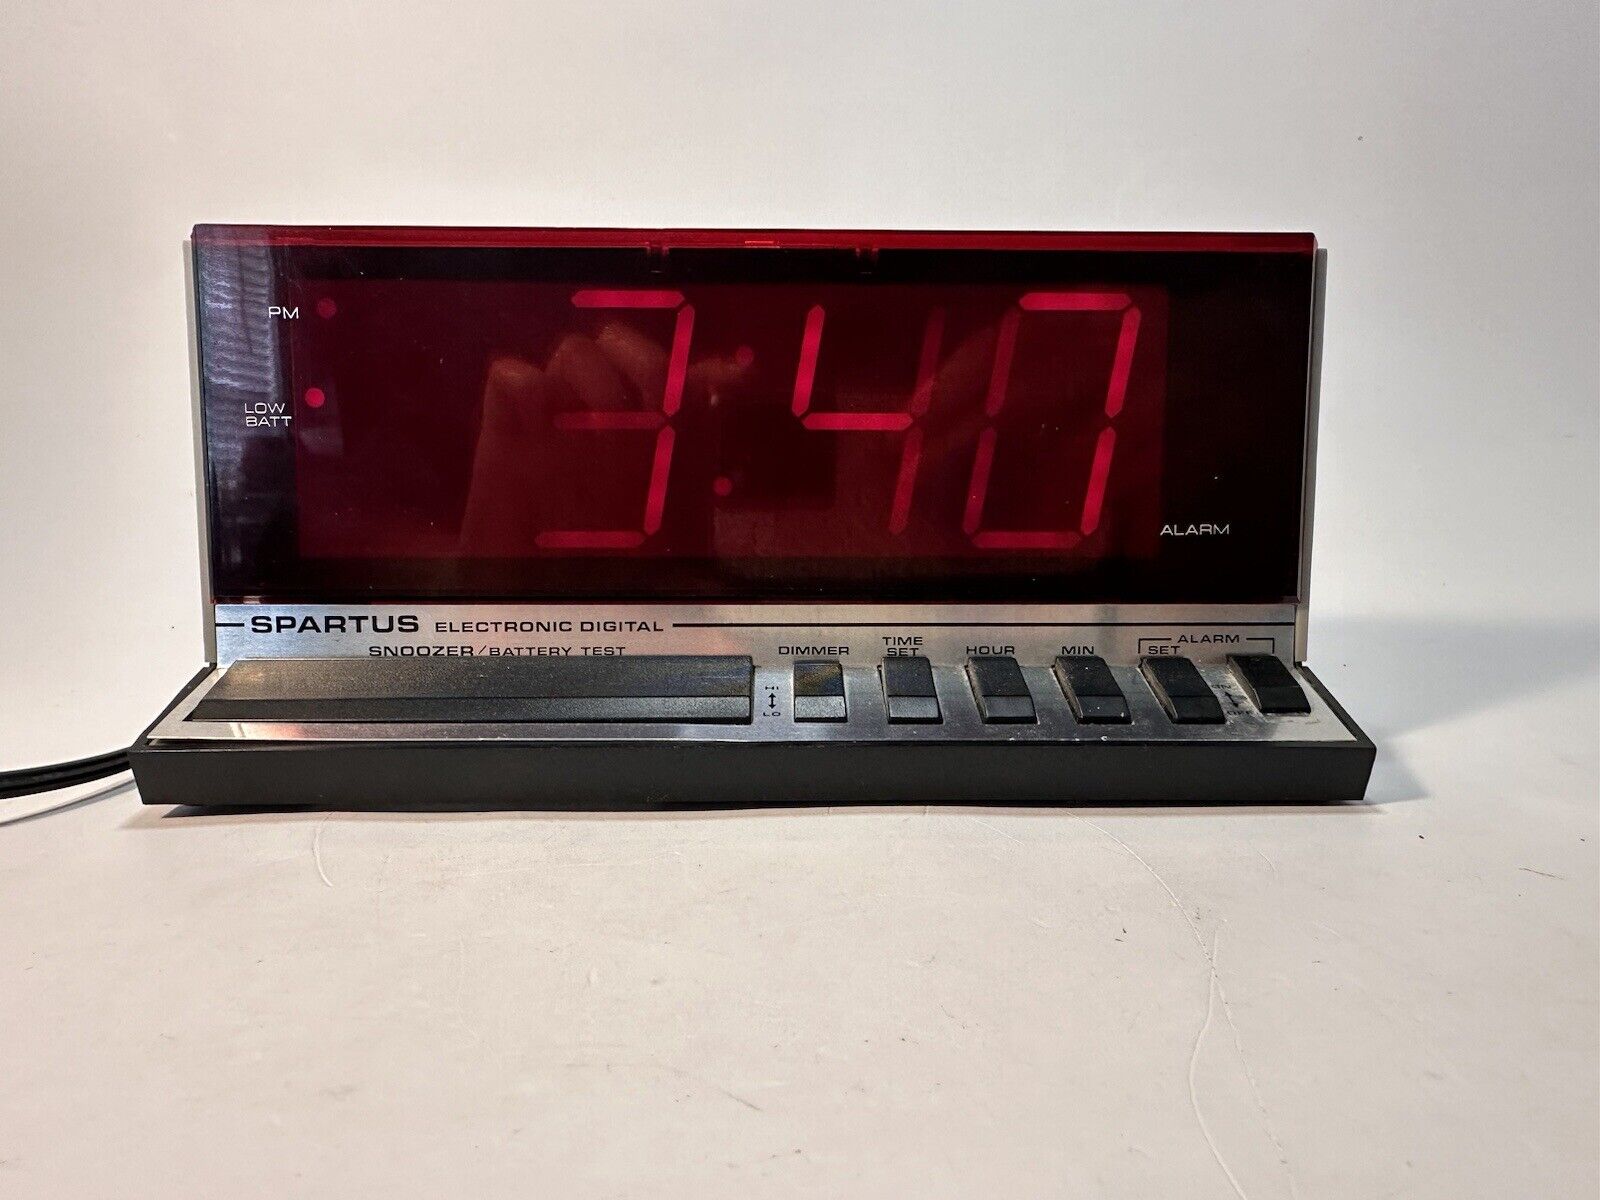 Vintage Spartus Electronic Digital Alarm Clock No. 1150 Snoozer Dimmer RARE VGC